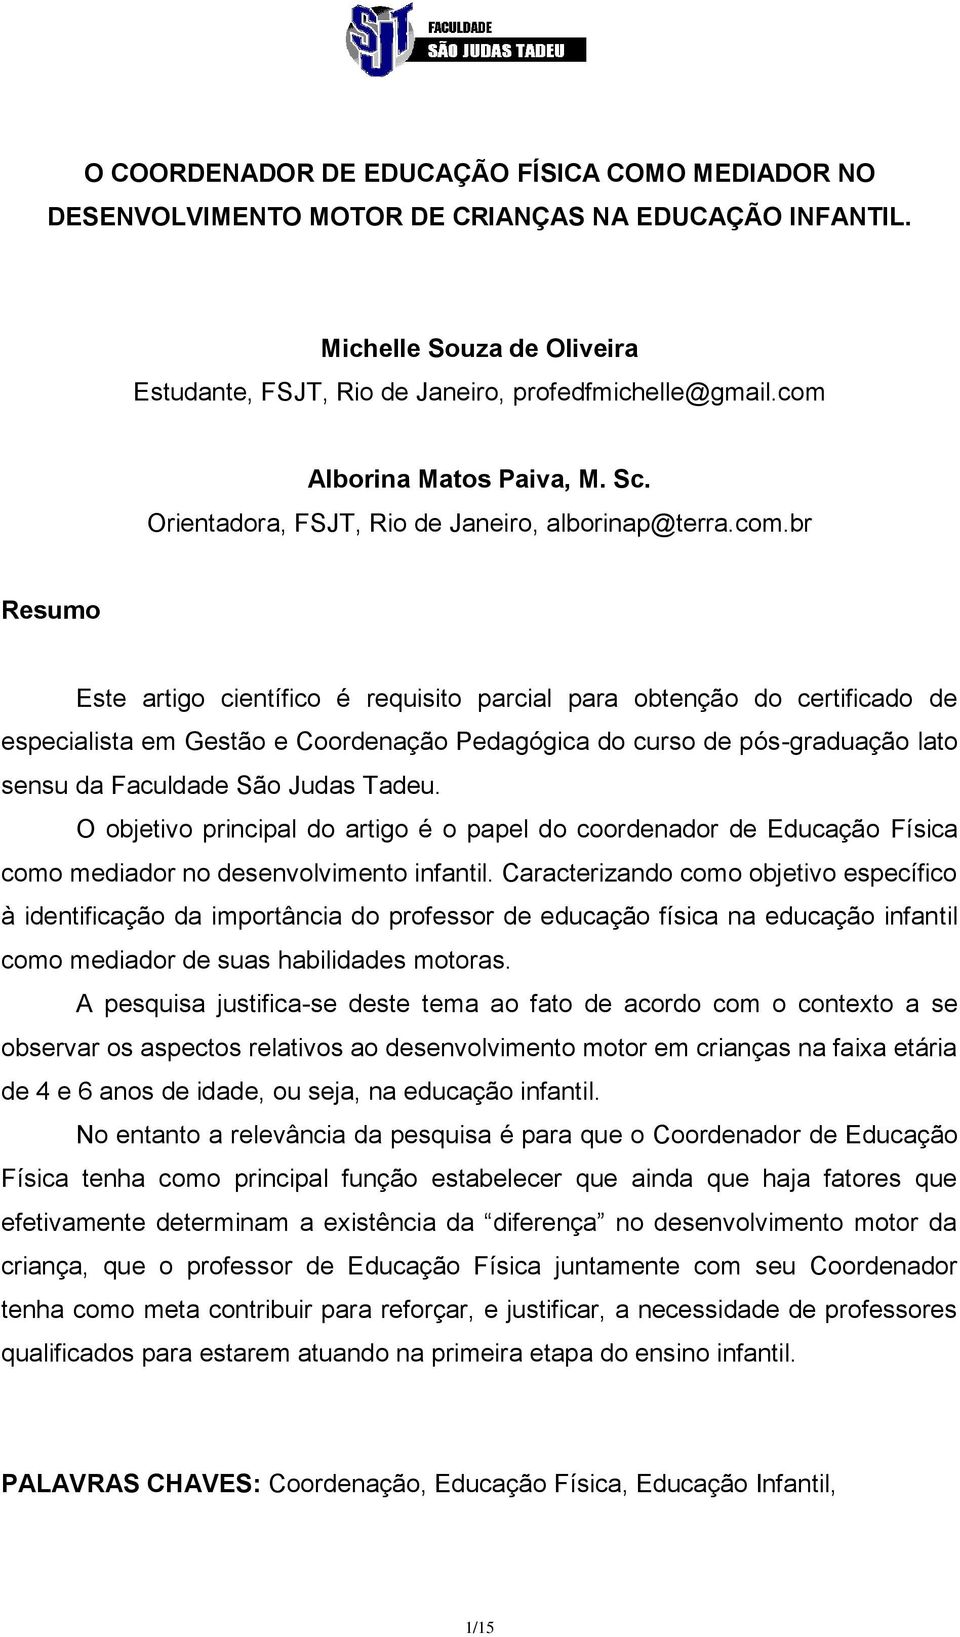 Coordenação Pedagógica do curso de pós-graduação lato sensu da Faculdade São Judas Tadeu.